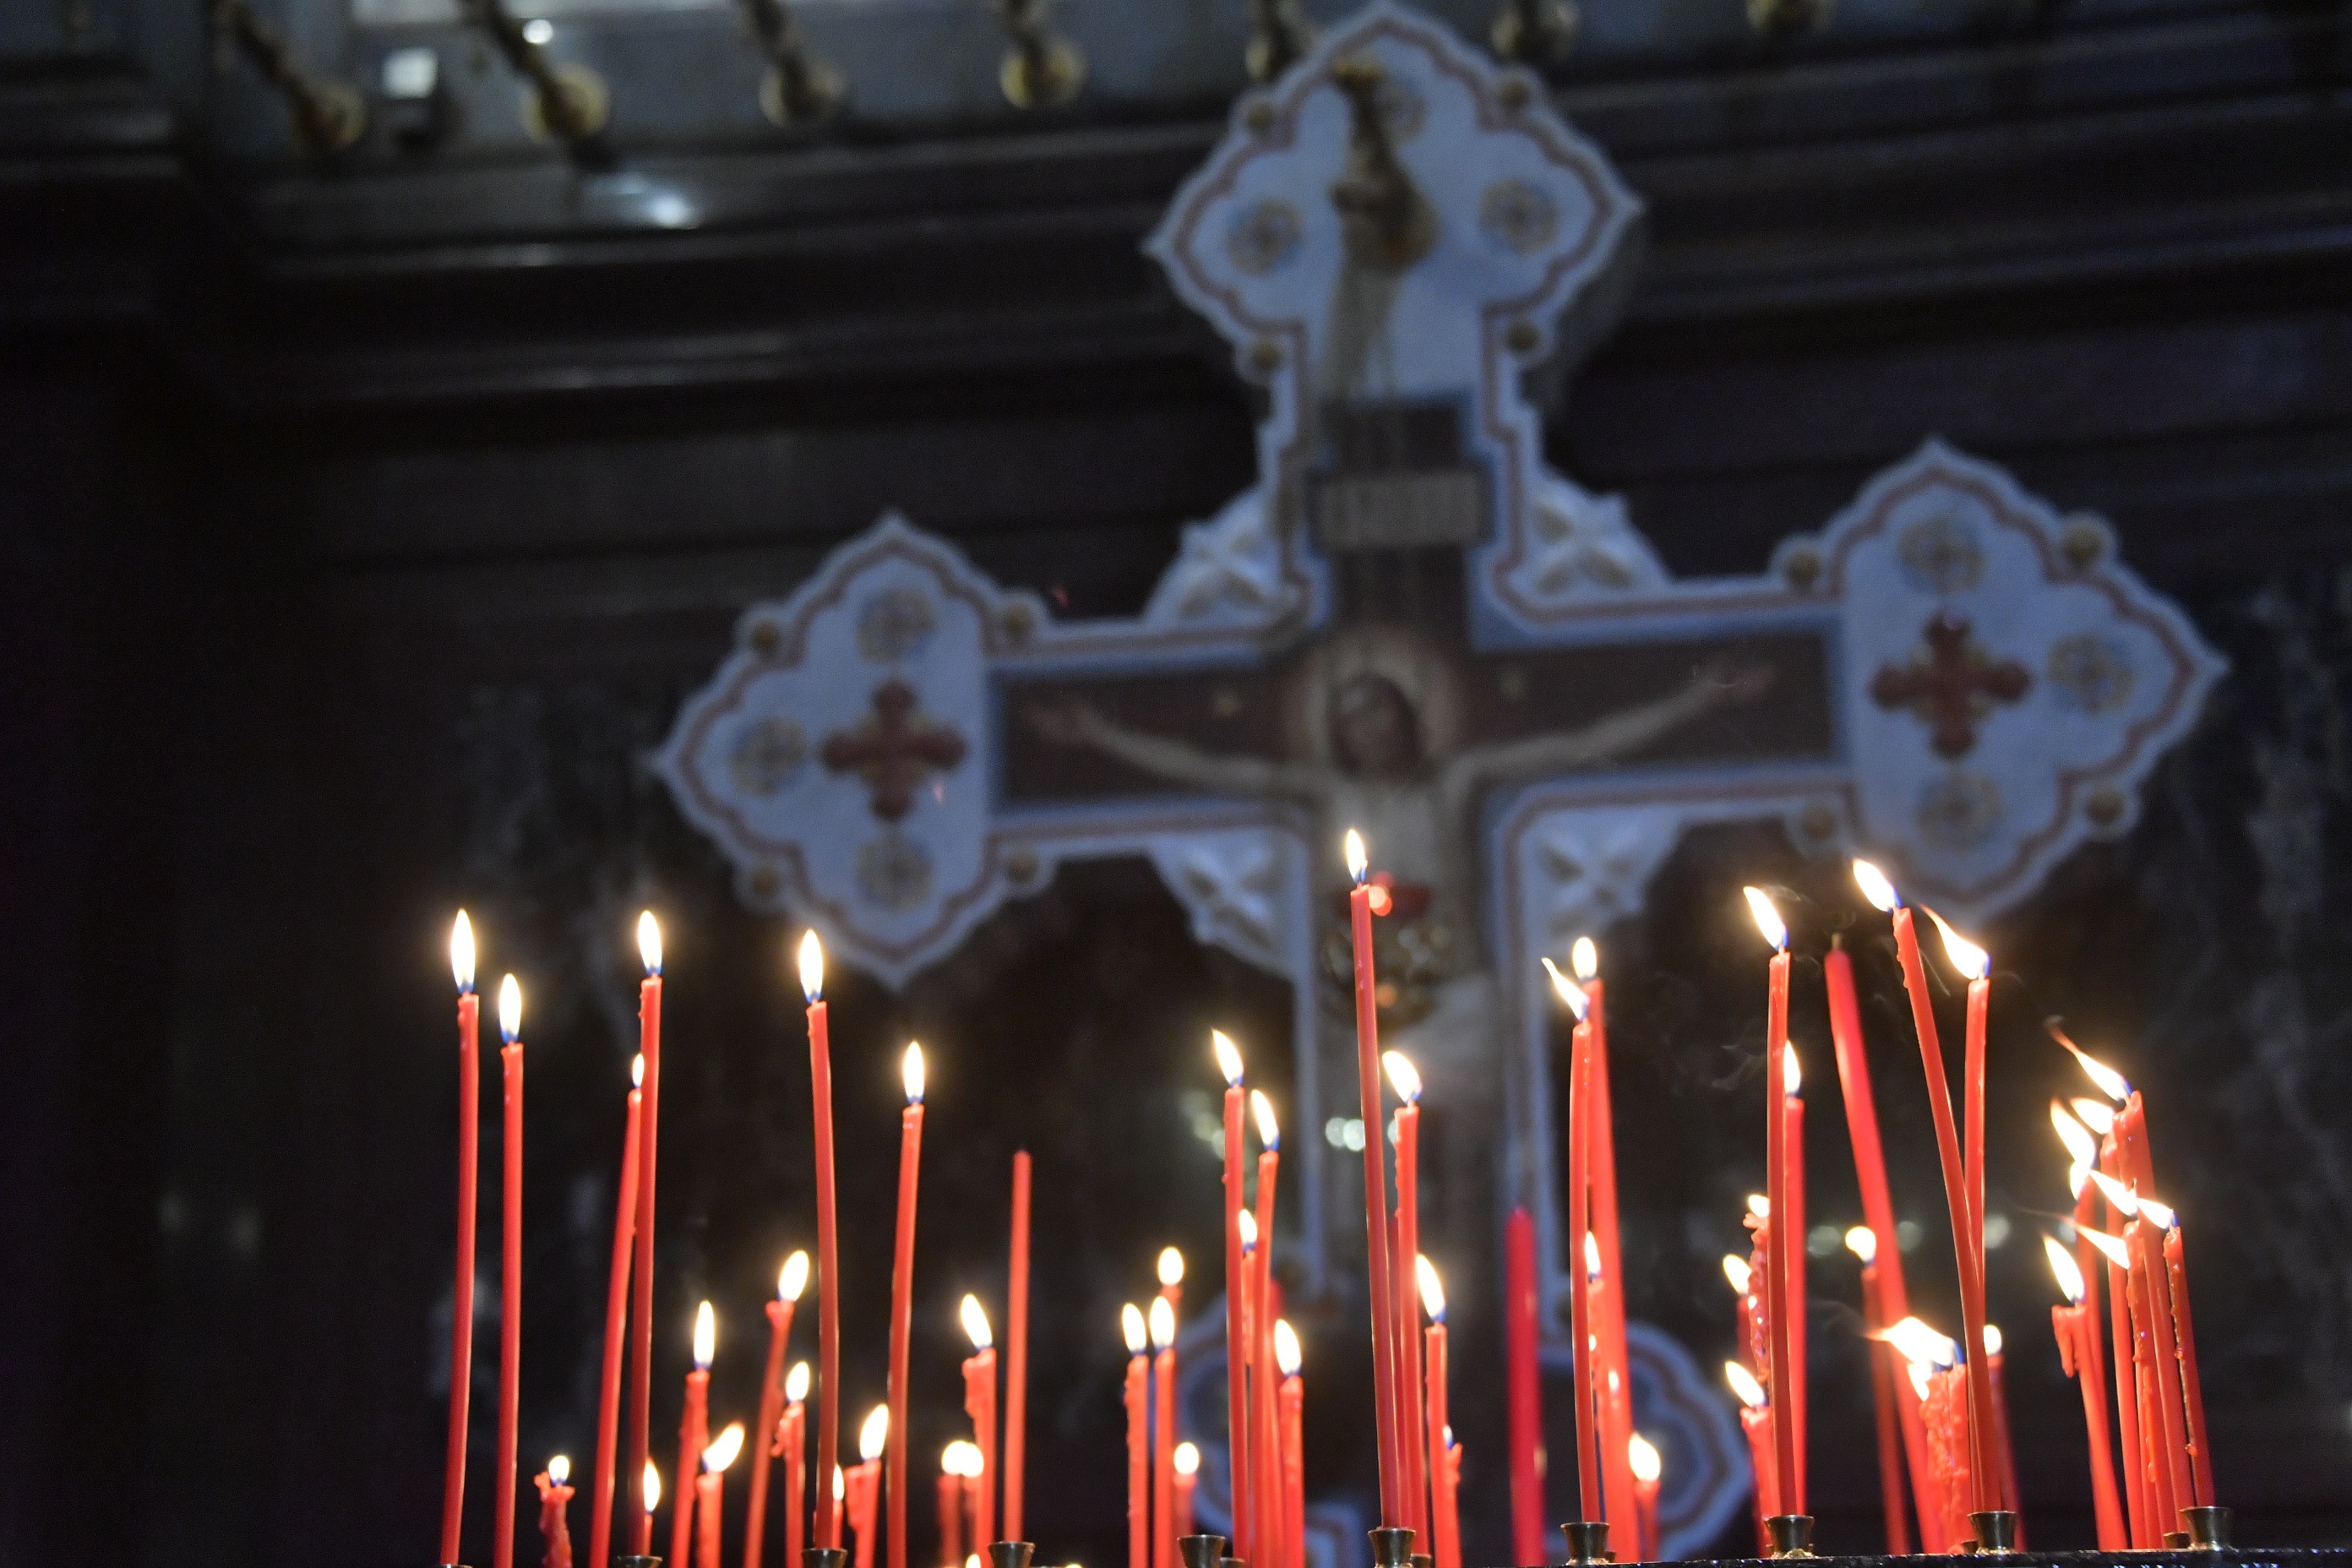 Священник рассказал, зачтутся ли молитвы от потушенных свечей и как меняется их сила после погашения огня